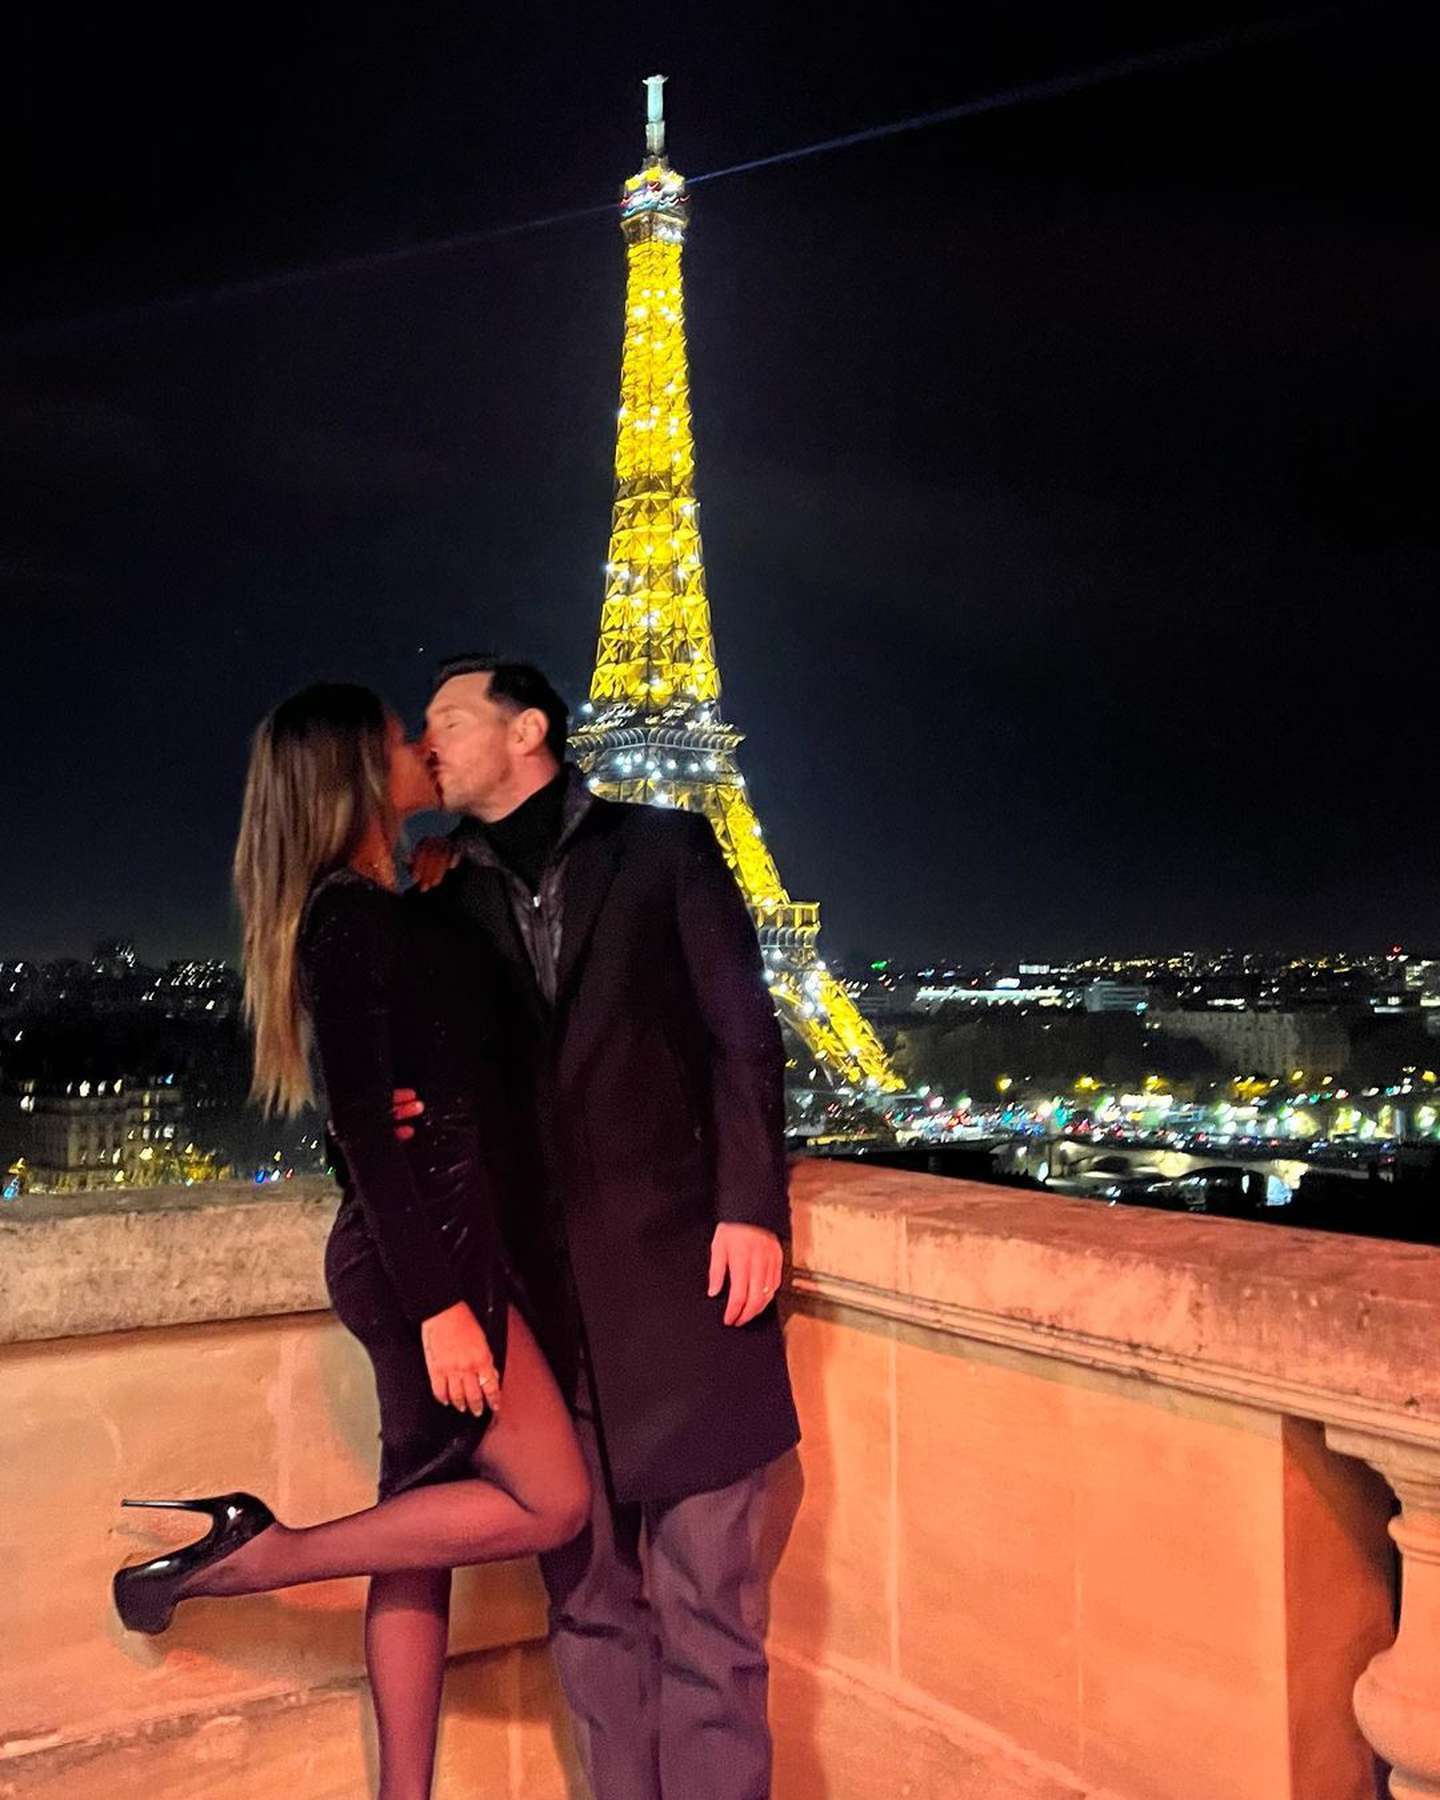 El último fin de semana, de hecho, fue a cenar con su esposa a un glamoroso restaurante a metros de la Torre Eiffel.